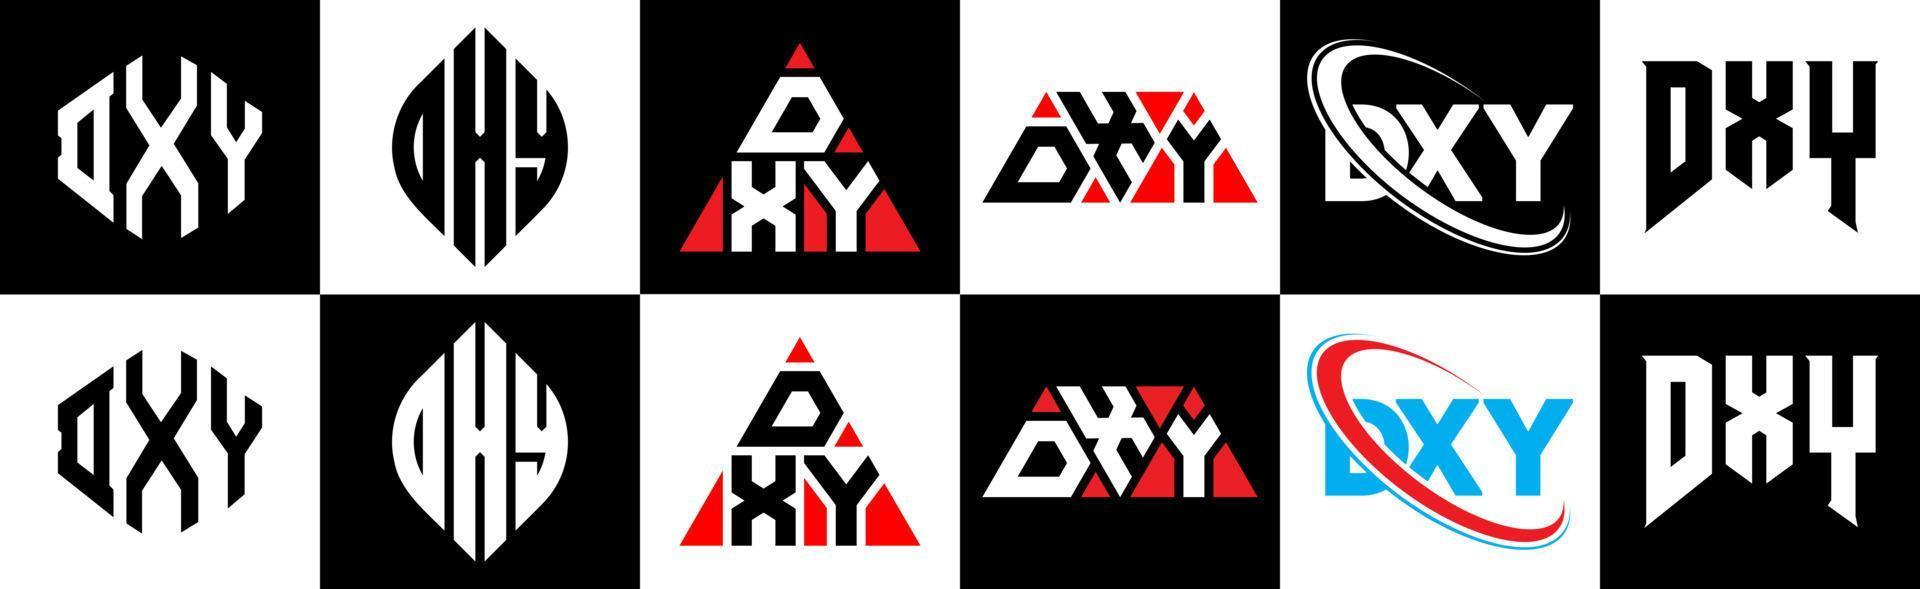 design de logotipo de letra dxy em estilo seis. dxy polígono, círculo, triângulo, hexágono, estilo plano e simples com logotipo de carta de variação de cor preto e branco definido em uma prancheta. dxy logotipo minimalista e clássico vetor